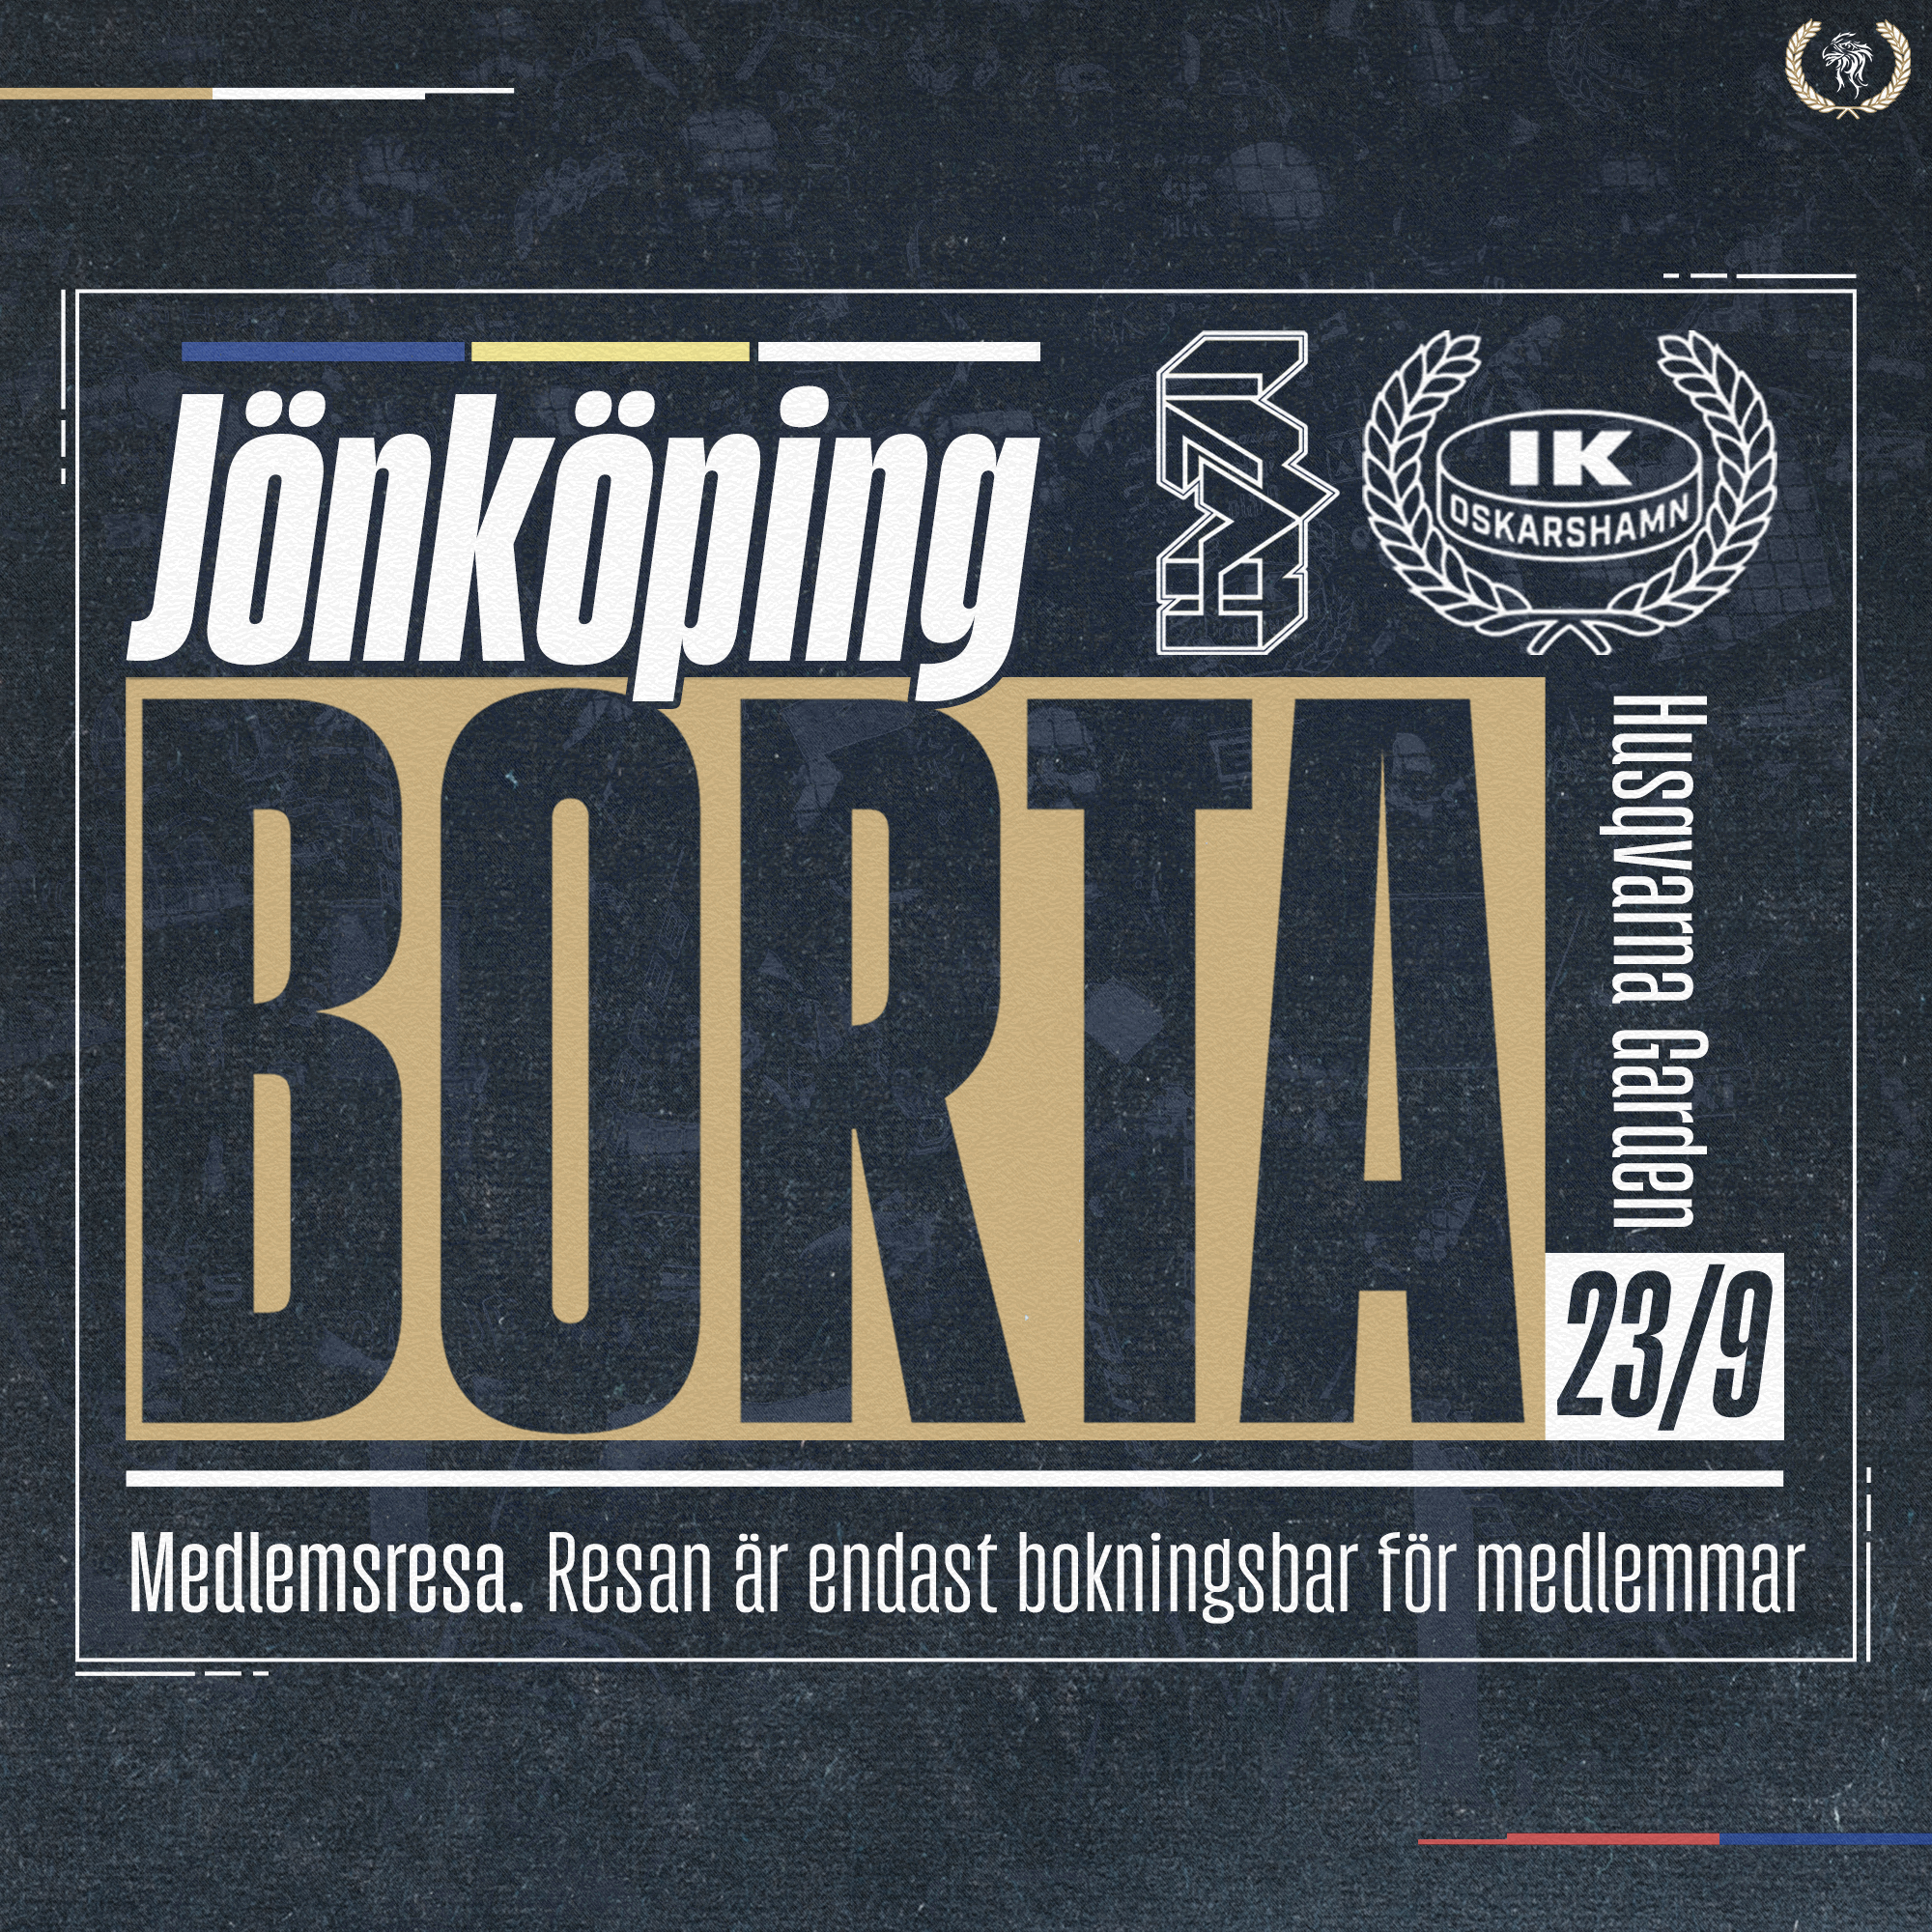 Jönköping-medlemsresa-23-9